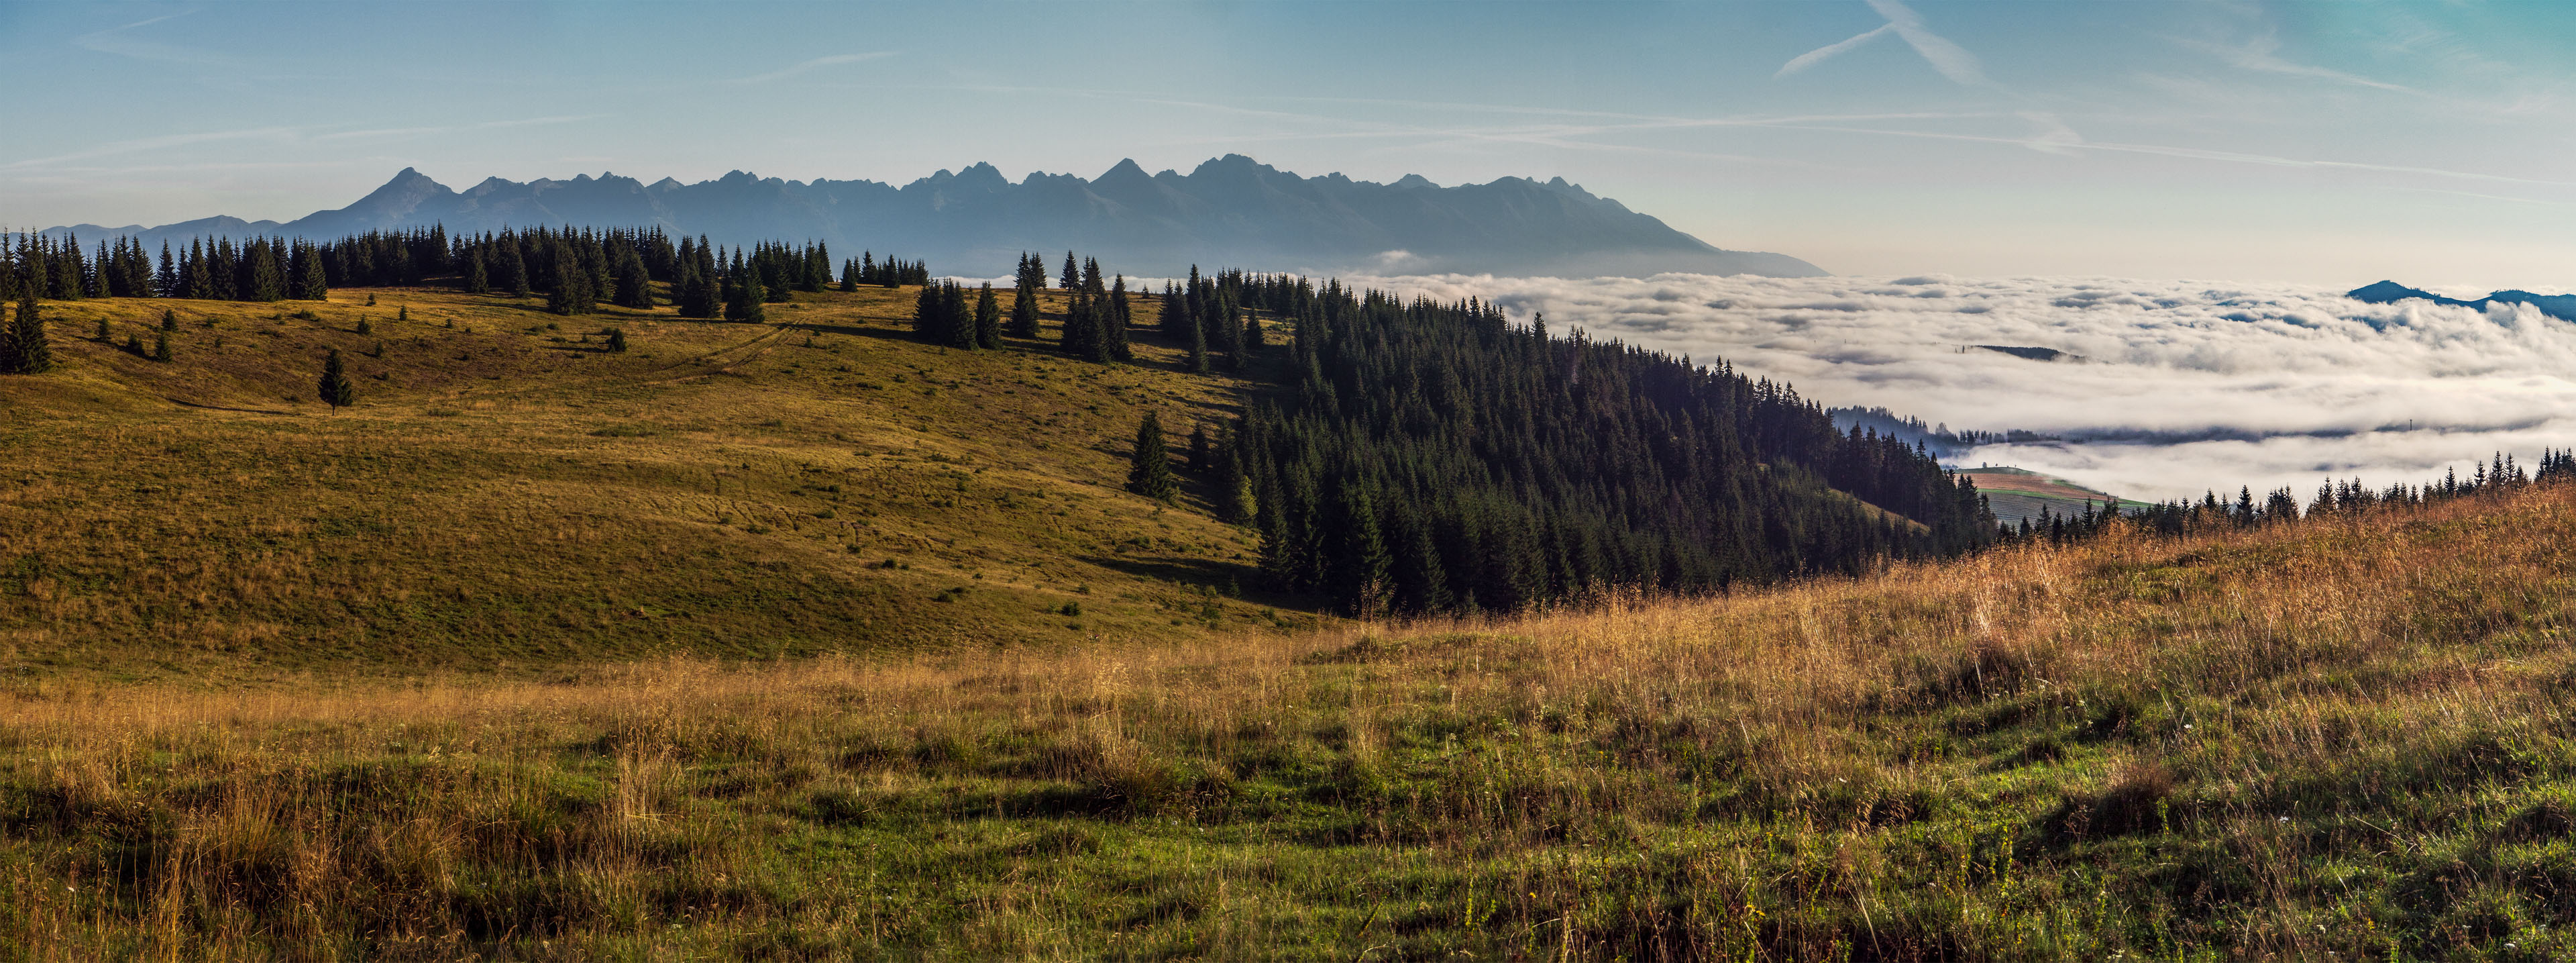 Čučoriedkový deň a Panská hoľa z Pred Soľankou (Nízke Tatry)